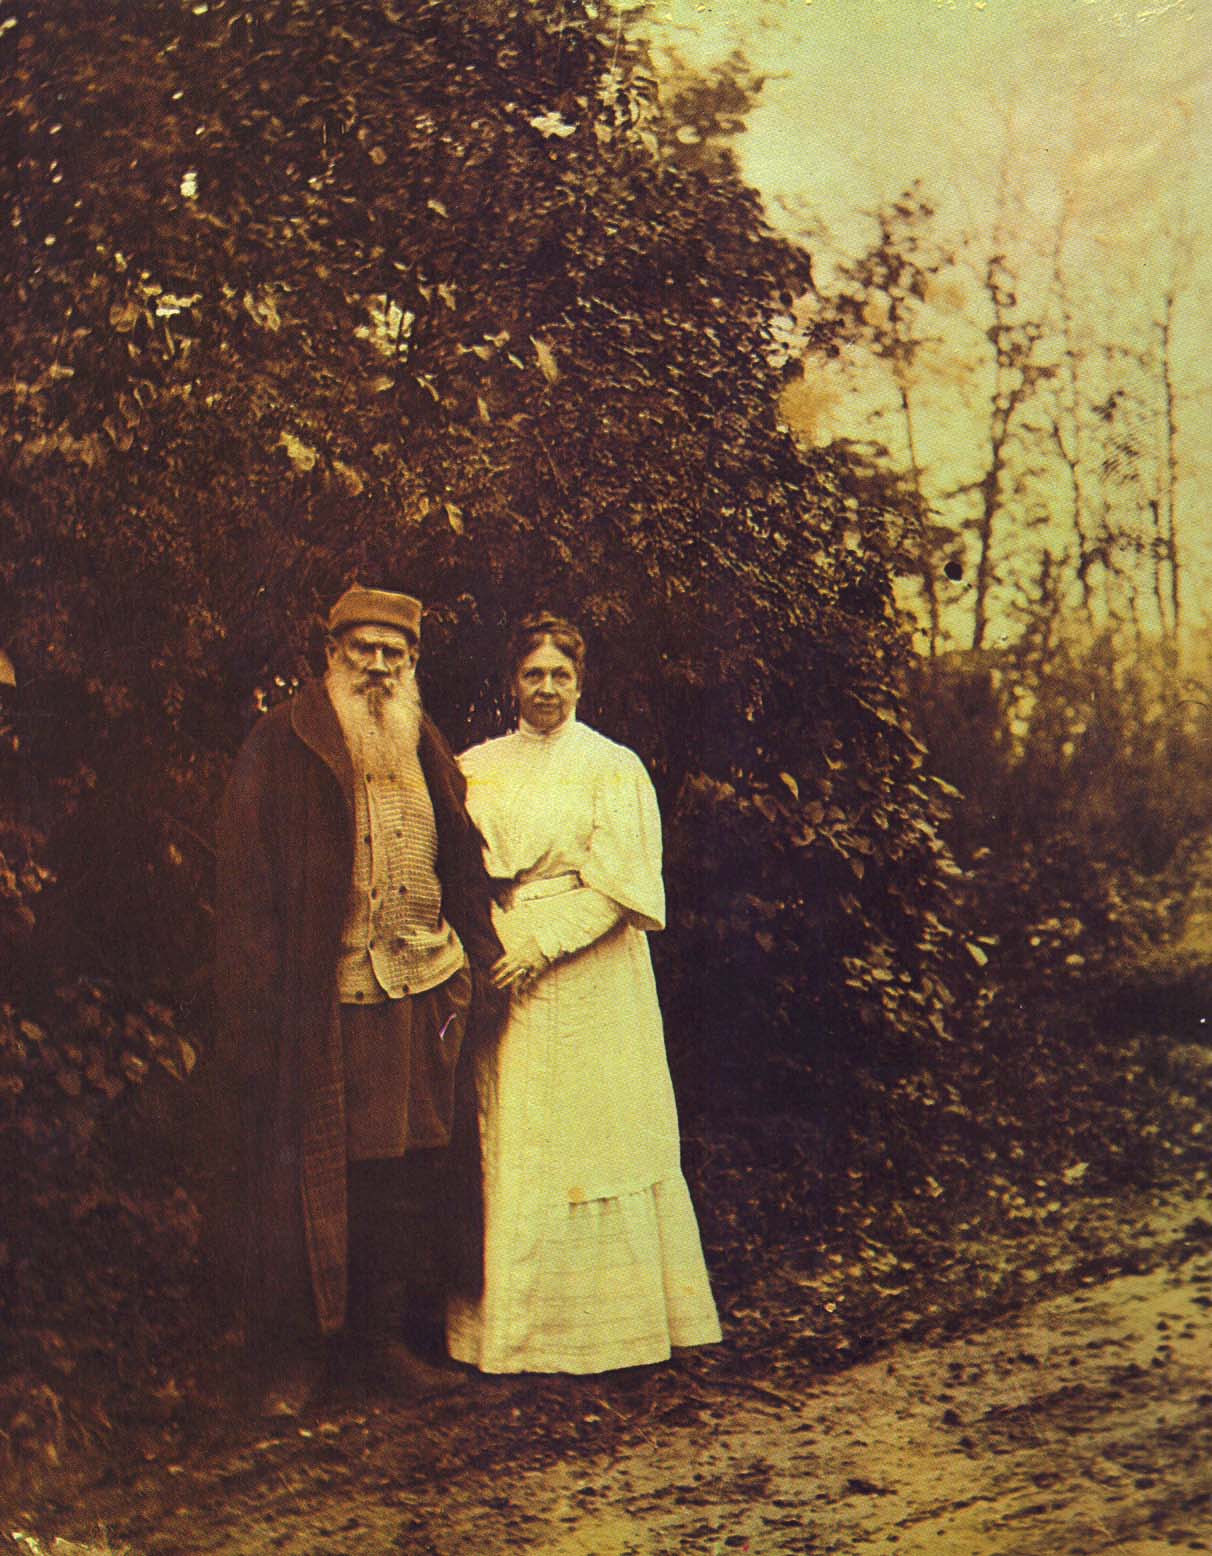 Л.Н. и. С.А. Толстые в годовщину свадьбы. 23 сентября 1905 г.  Фотография С.А. Толстой.